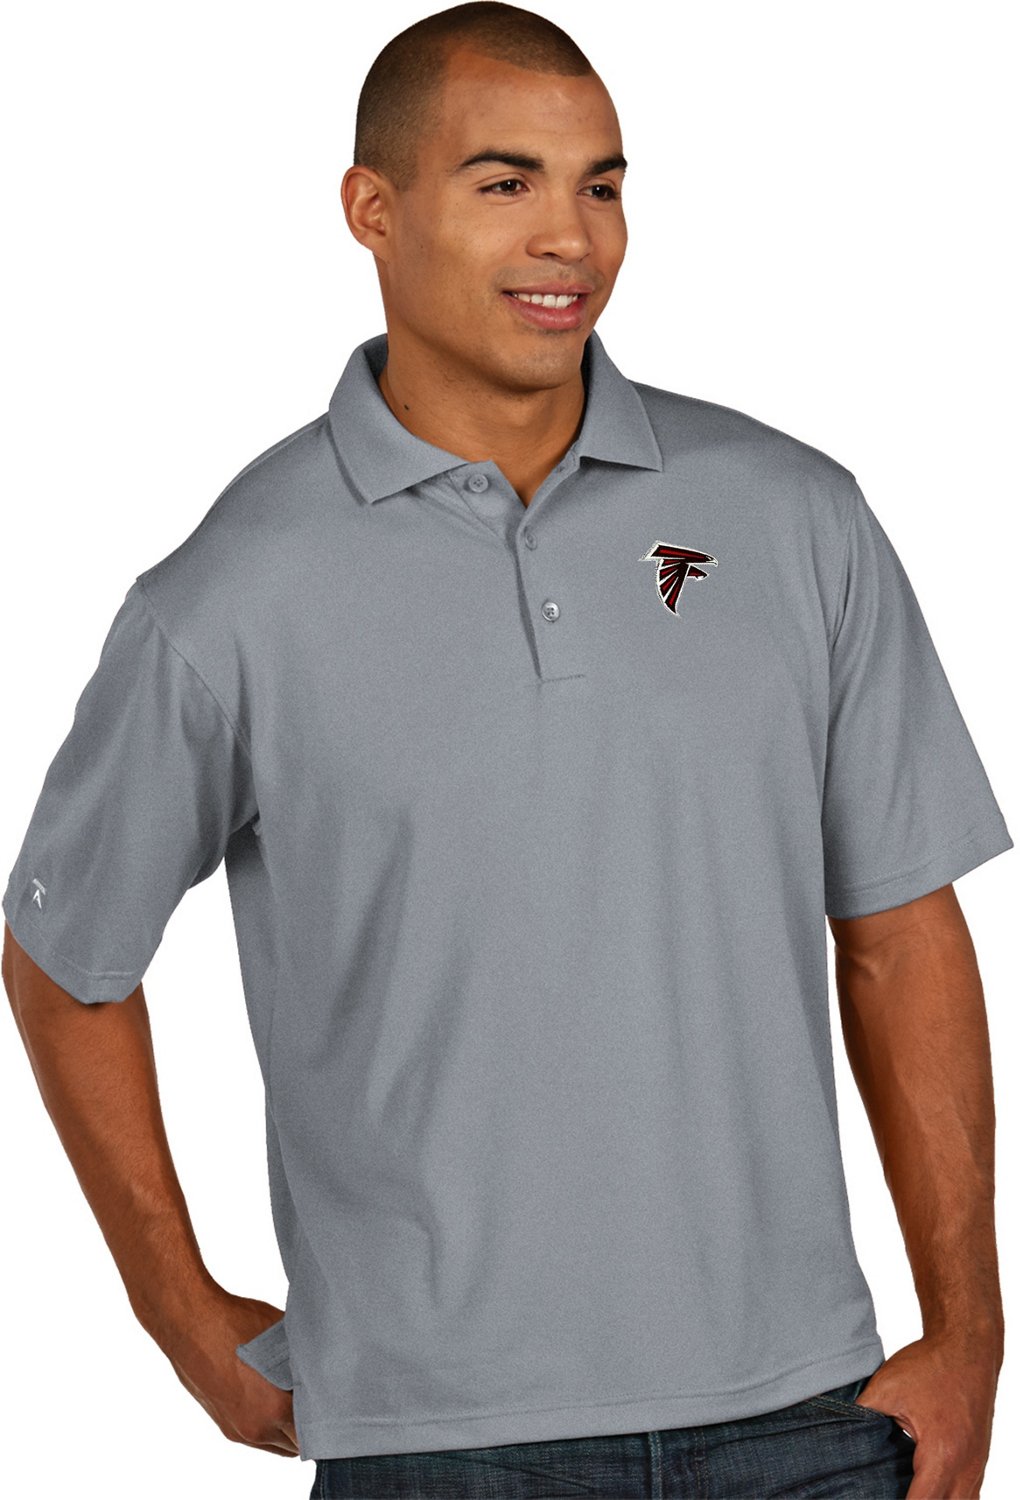 atlanta falcons collared shirt